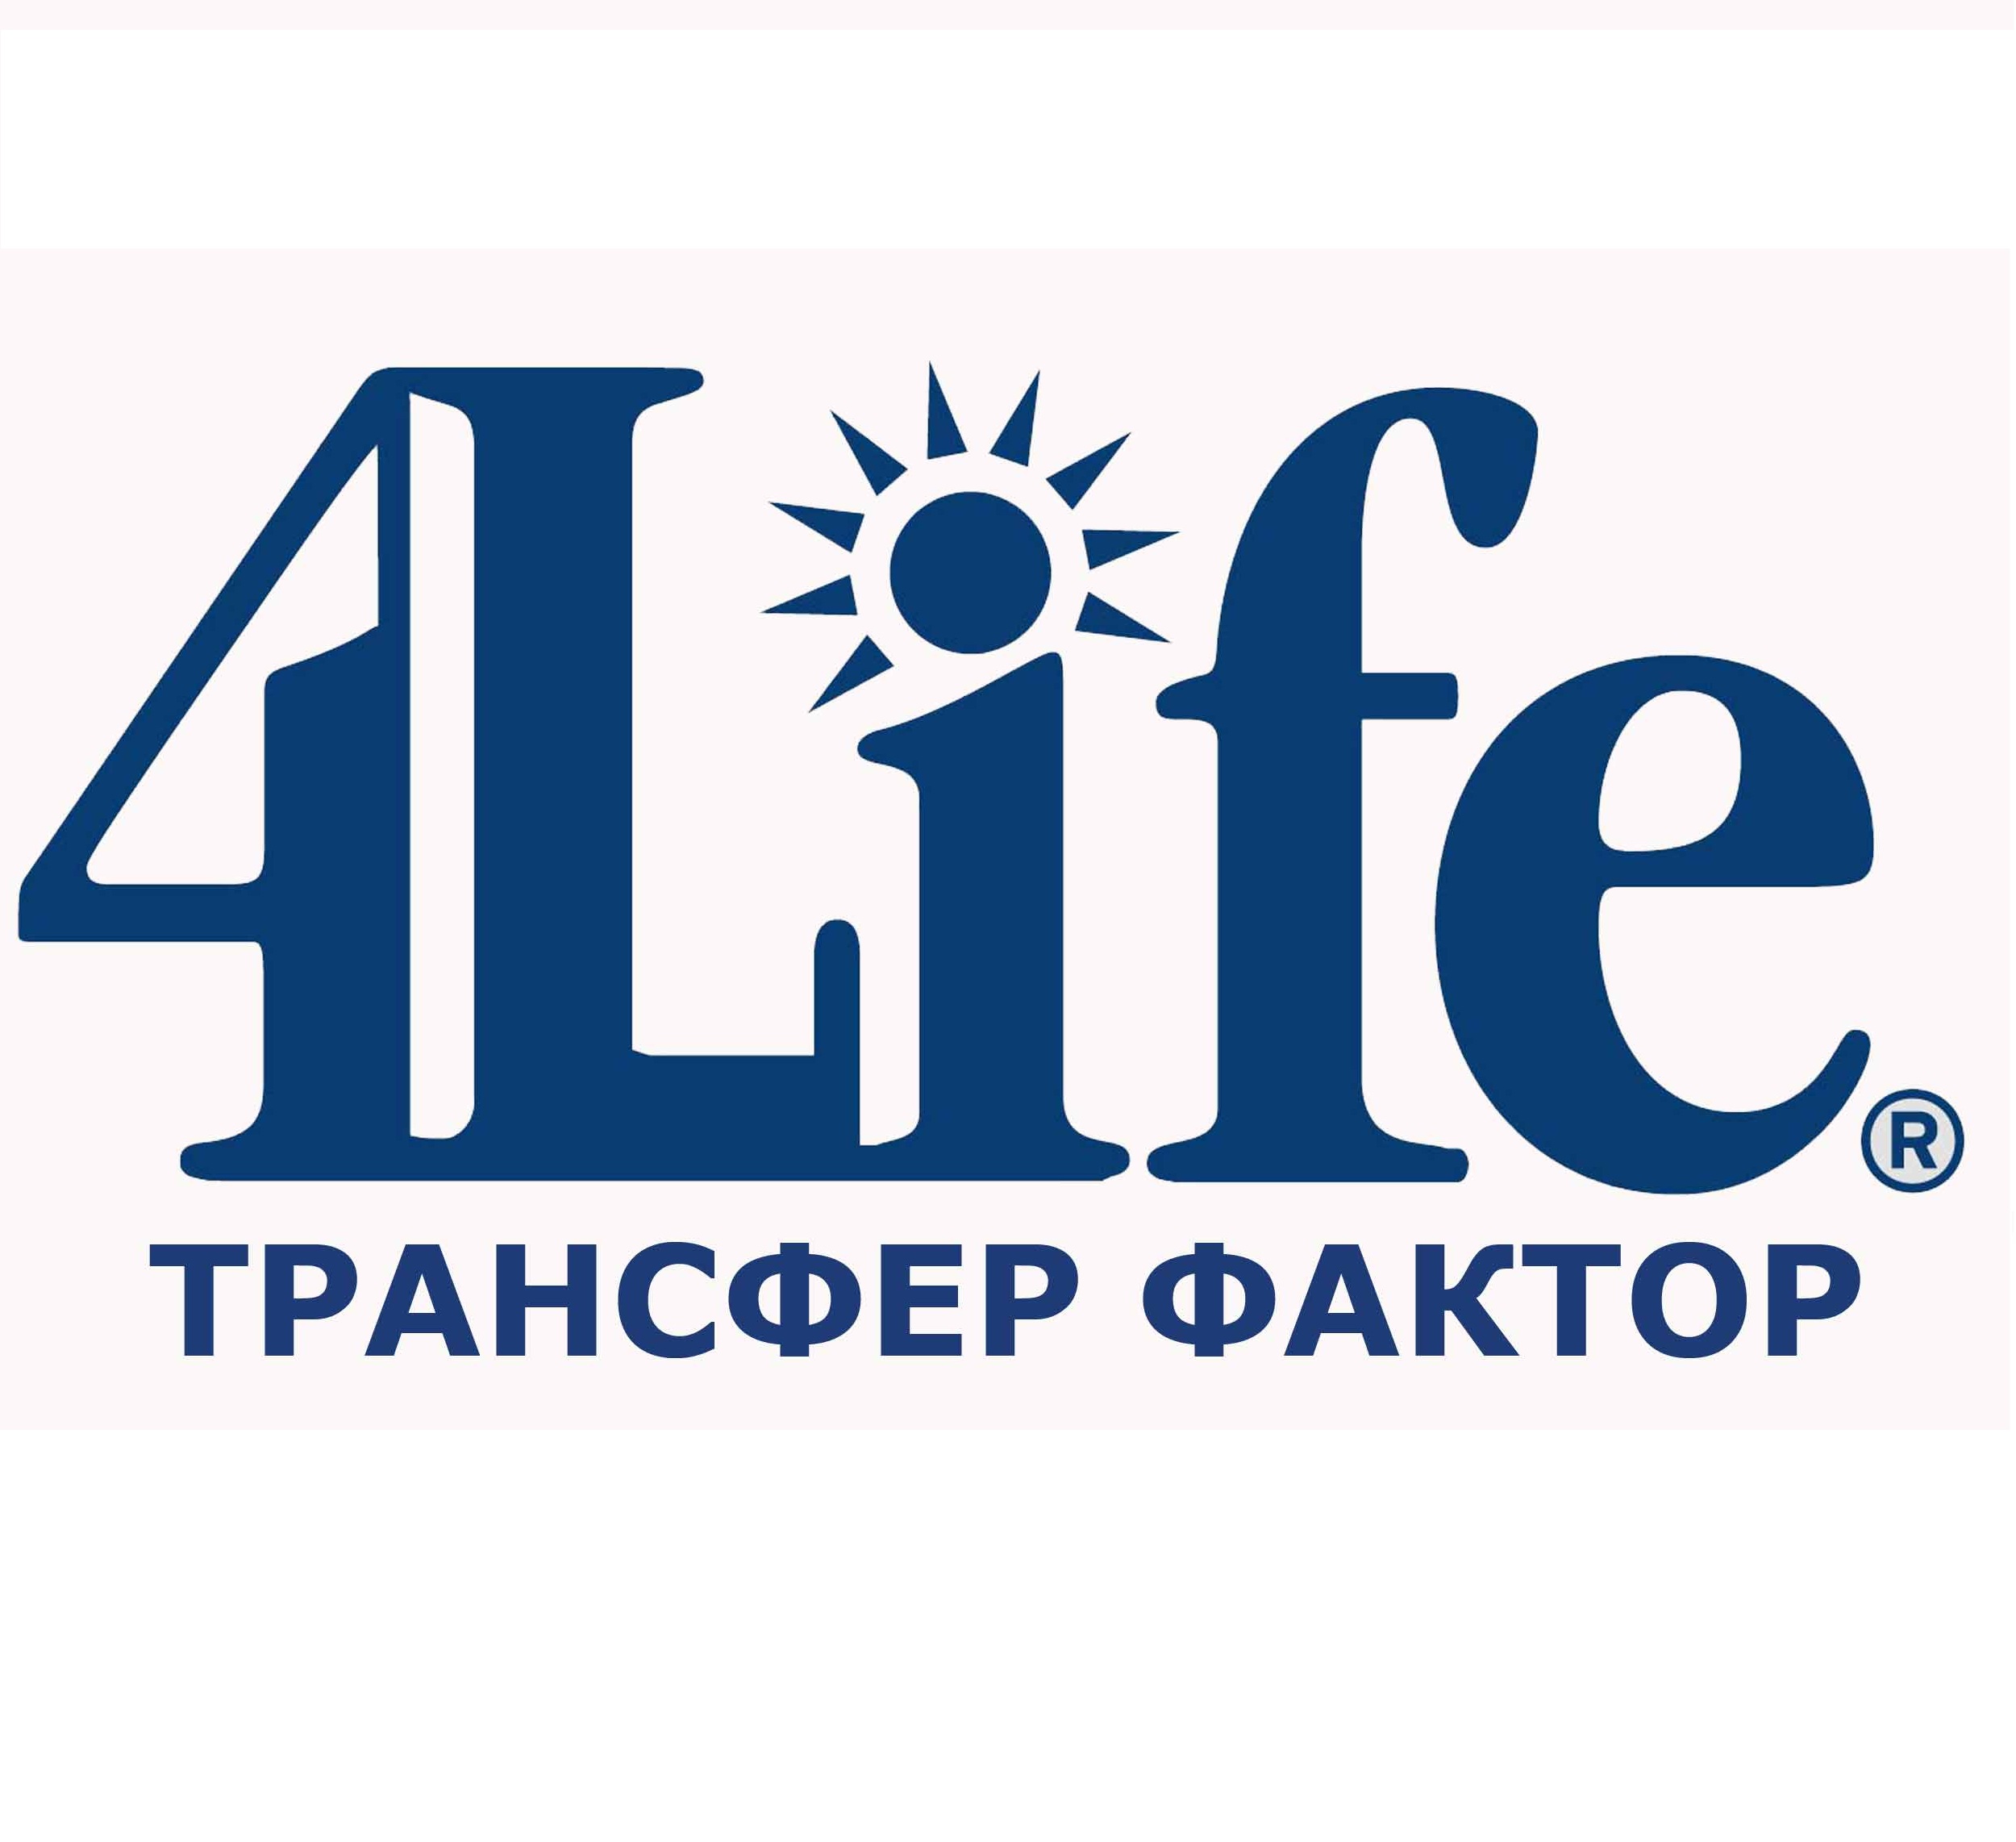 Https 4 life. Трансфер факторы 4life research. Трансфер фактор 4 Life logo. Компания 4life research. 4life новый логотип.